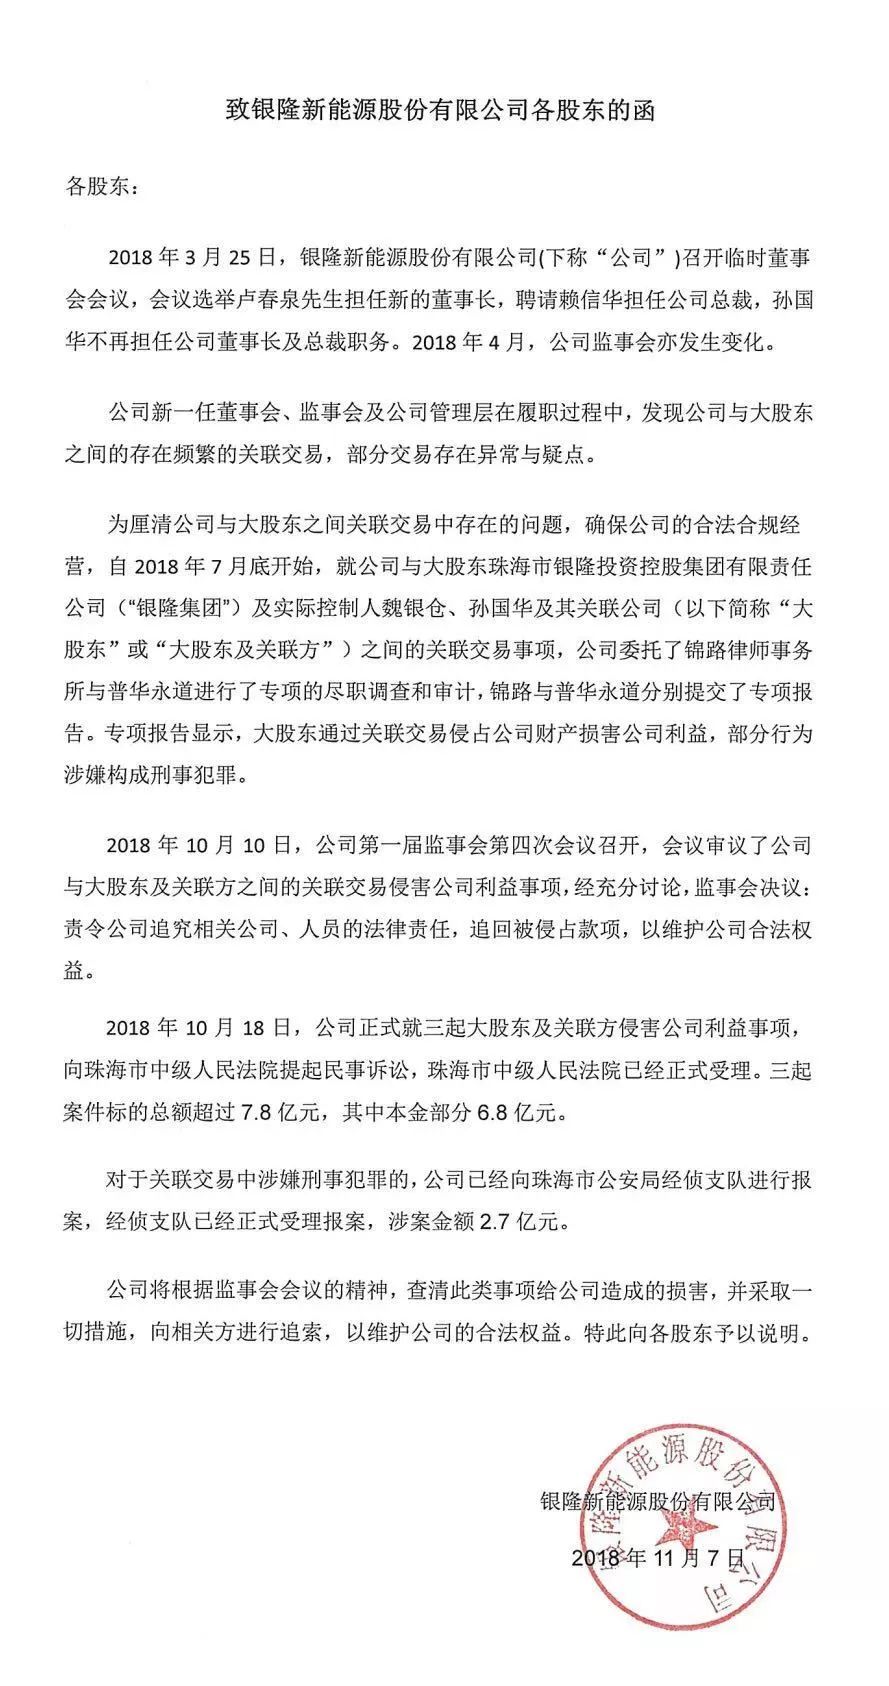 魏银仓称已在北京起诉 银隆投资：董明珠为“个人私利”驱赶大股东令人心寒